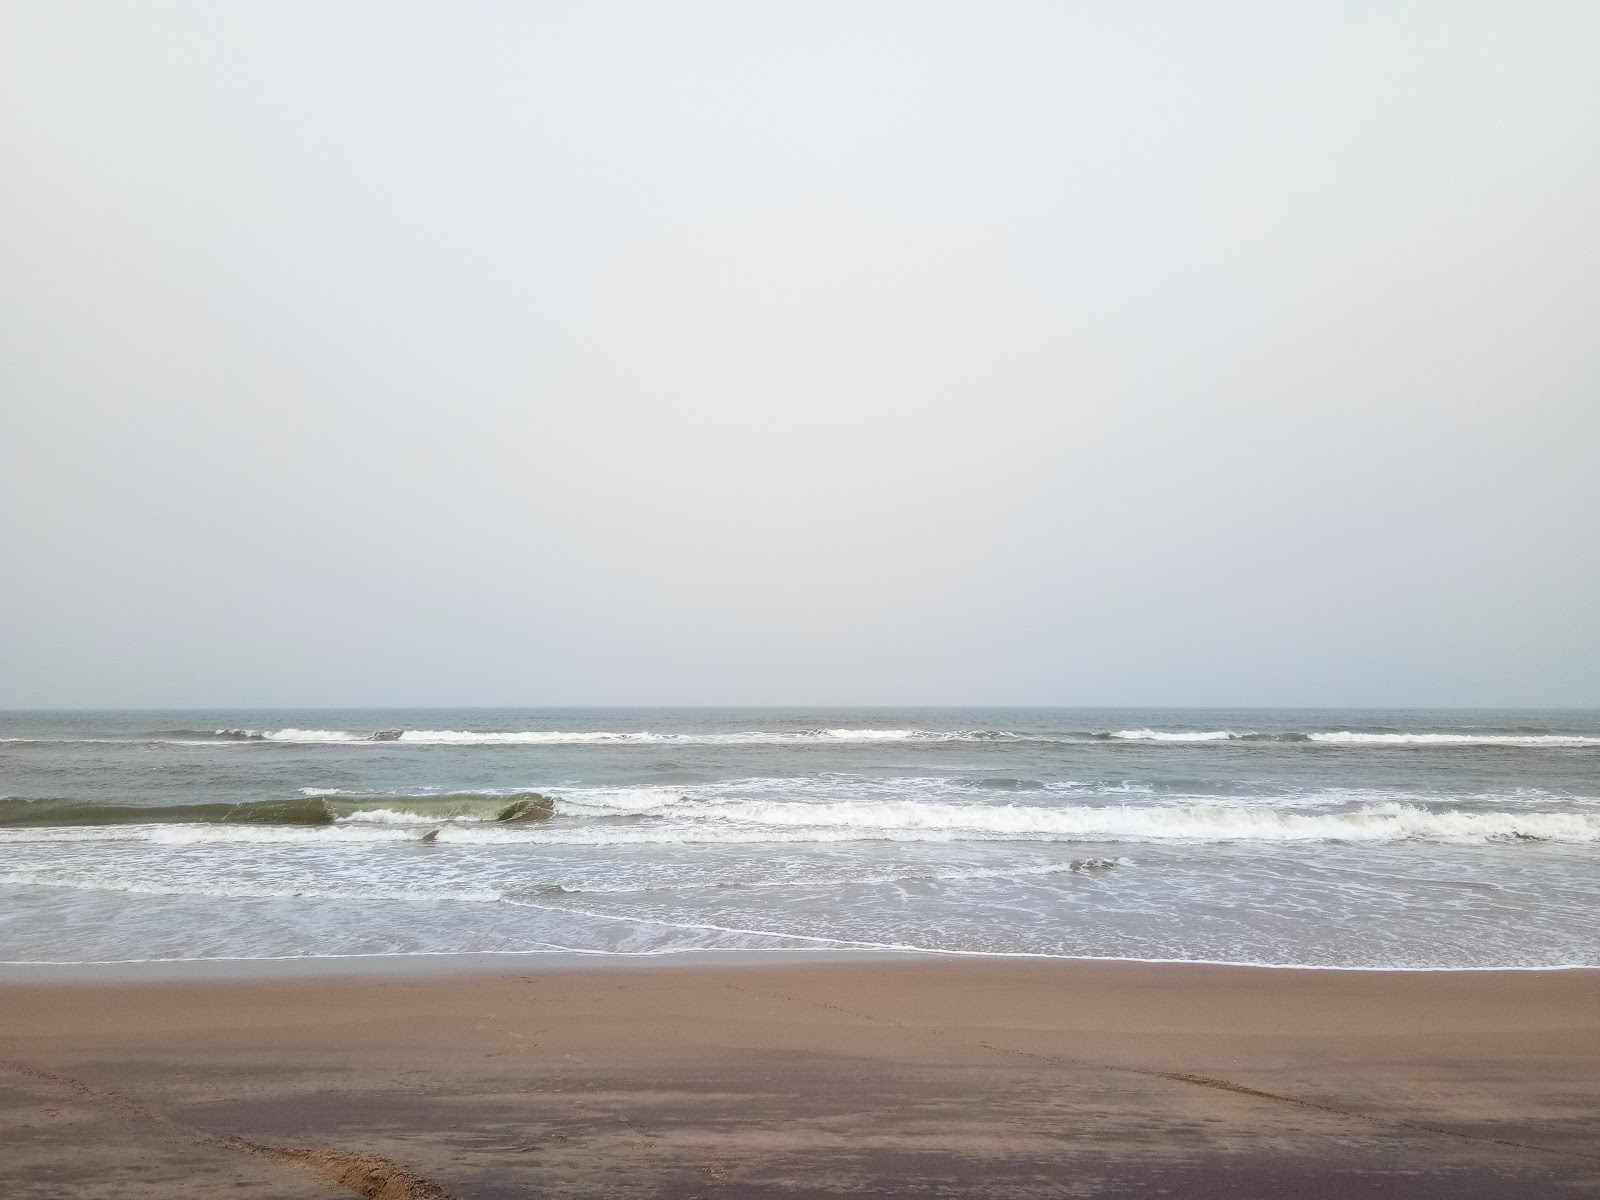 Photo de Rajaram Puram Beach - endroit populaire parmi les connaisseurs de la détente